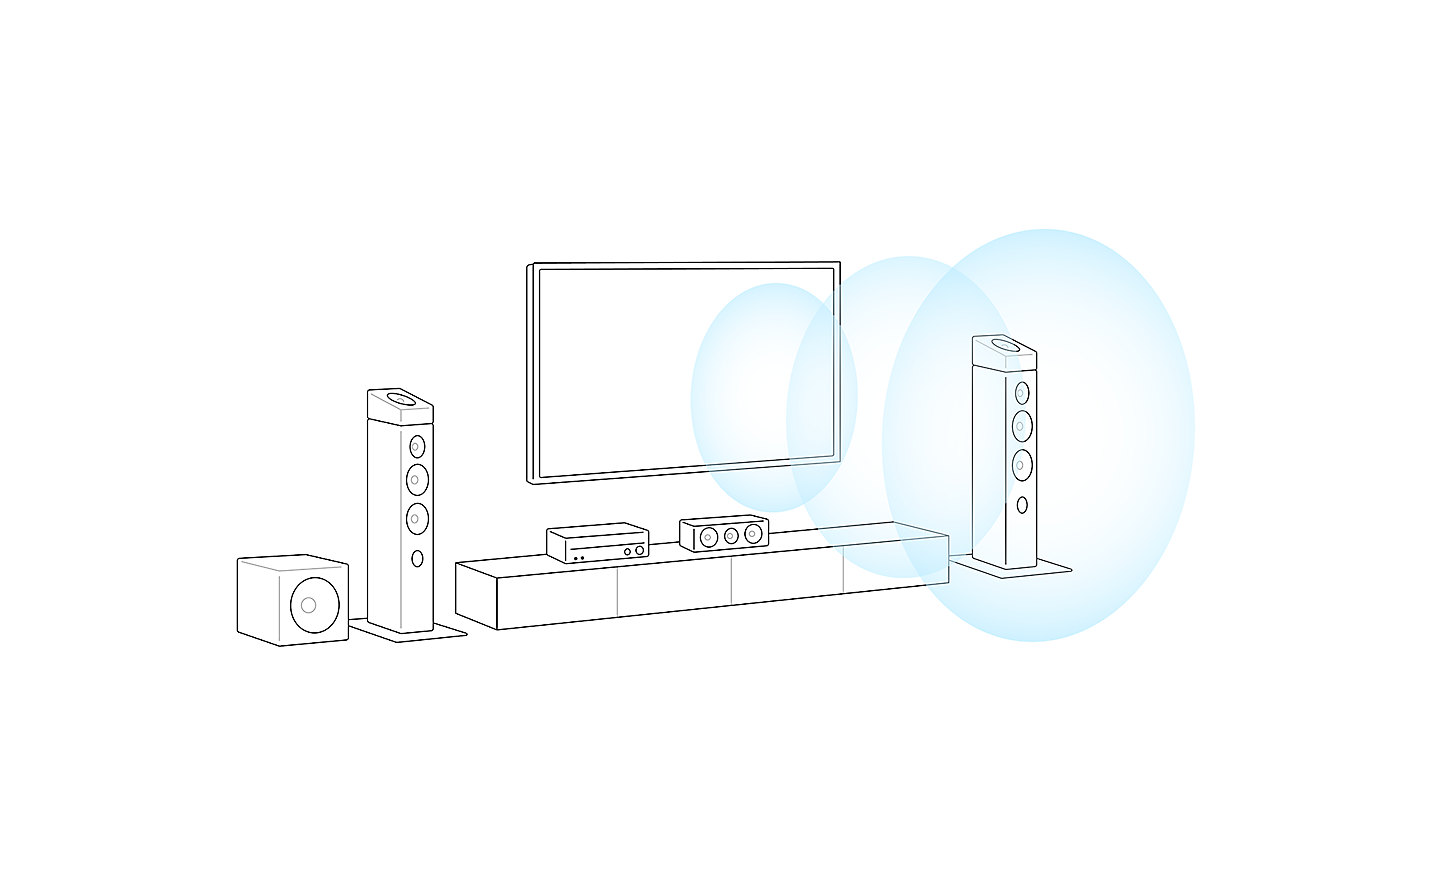 Skizzenhafte Darstellung eines Fernseh-Setups. 3 blaue Kreise, die aus der Mitte des Fernsehers kommen, symbolisieren die Klangprojektion.